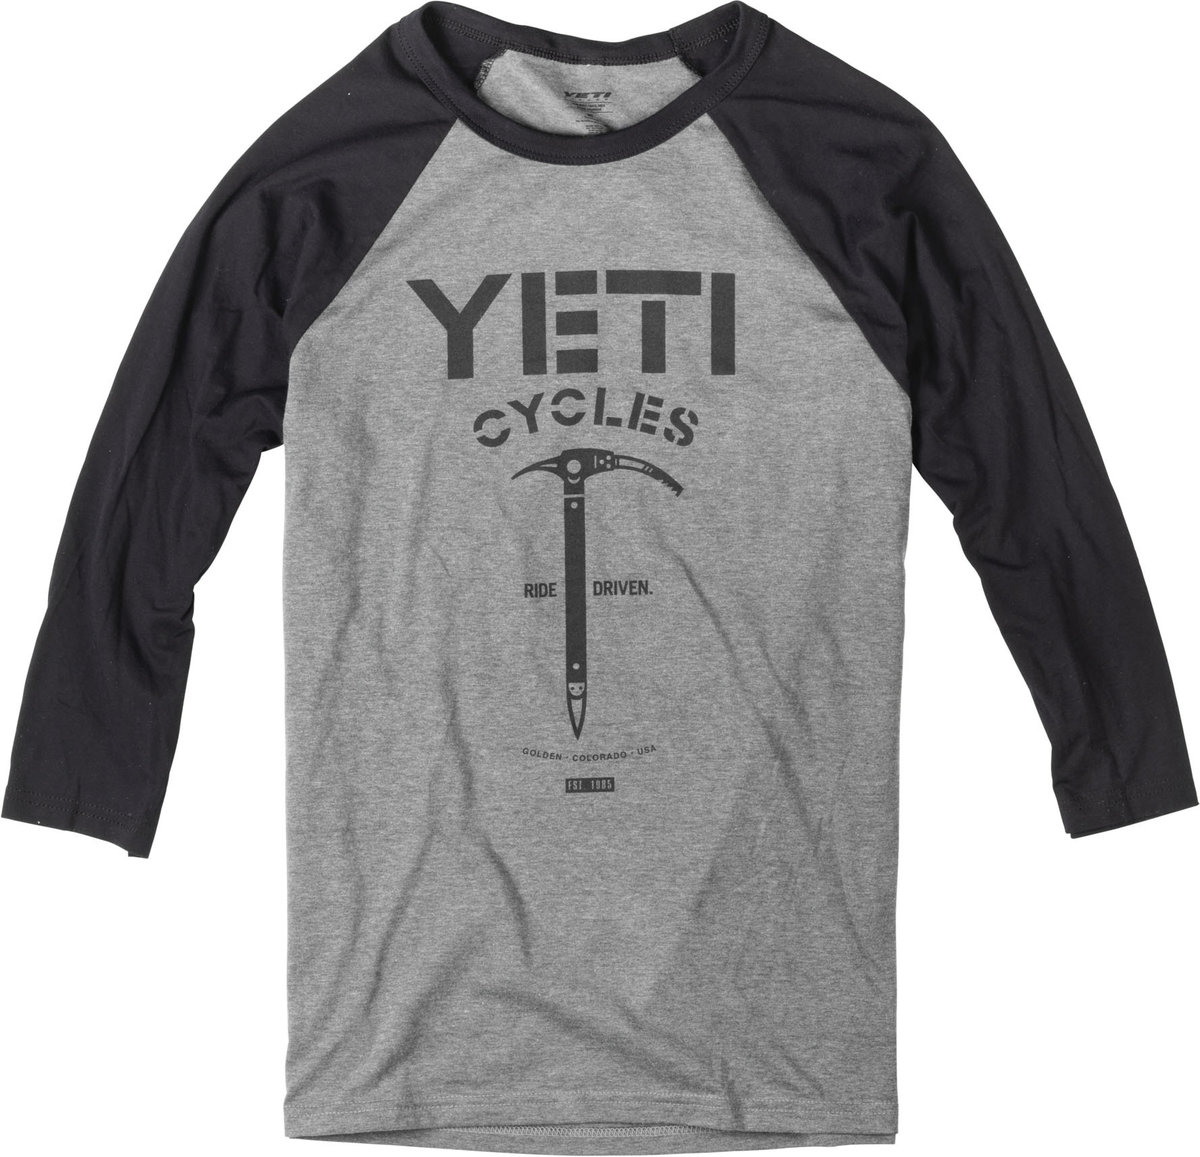 yeti cycles clothing